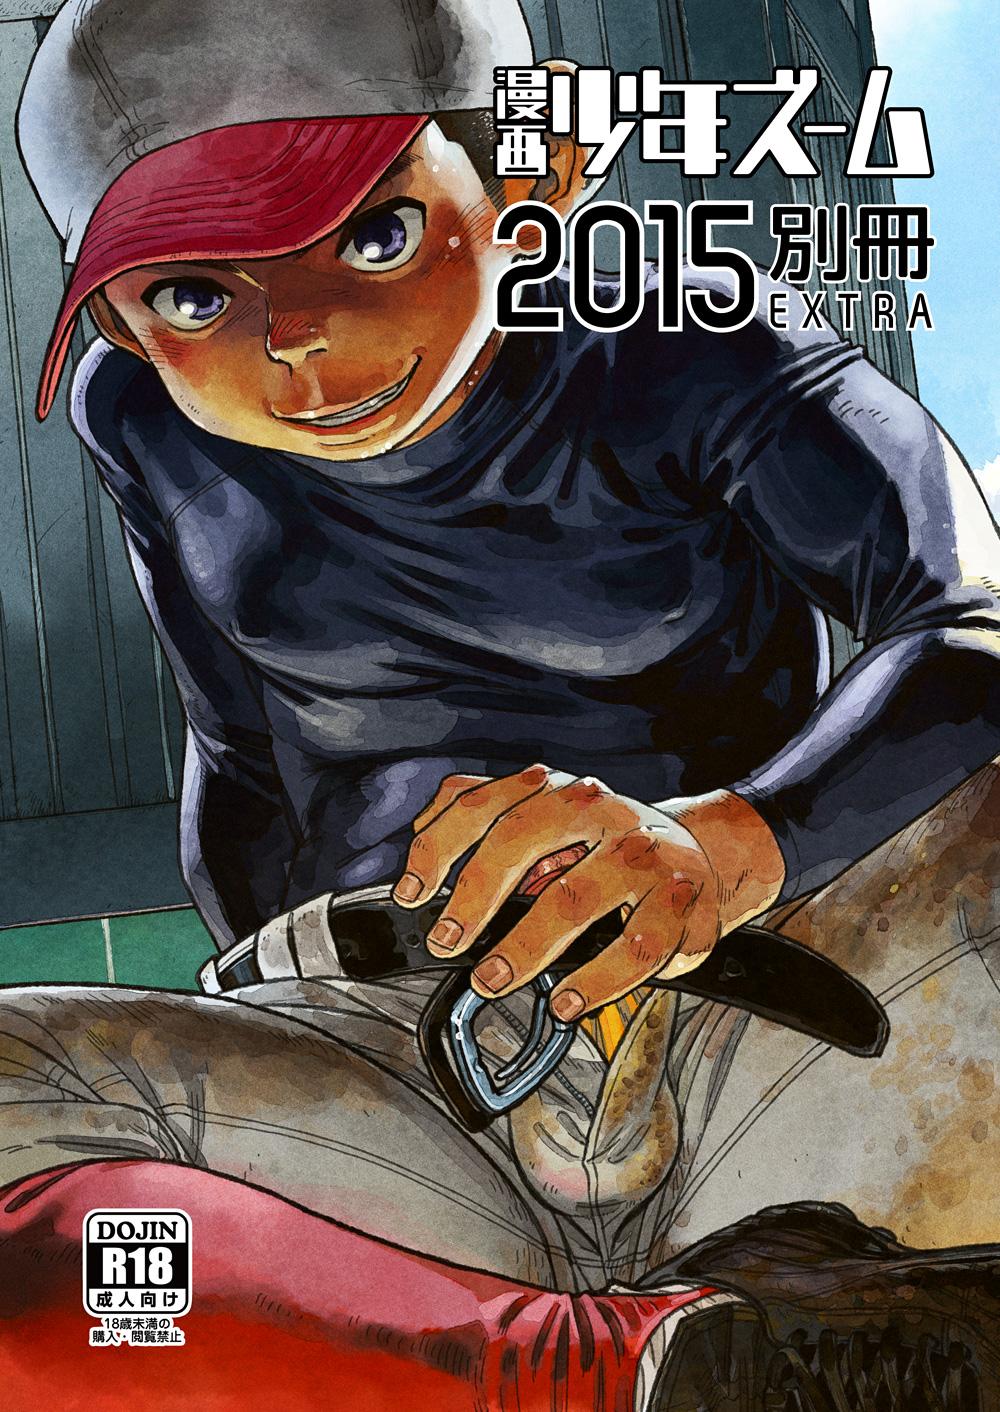 Manga Shounen Zoom 2015 Bessatsu EXTRA 0